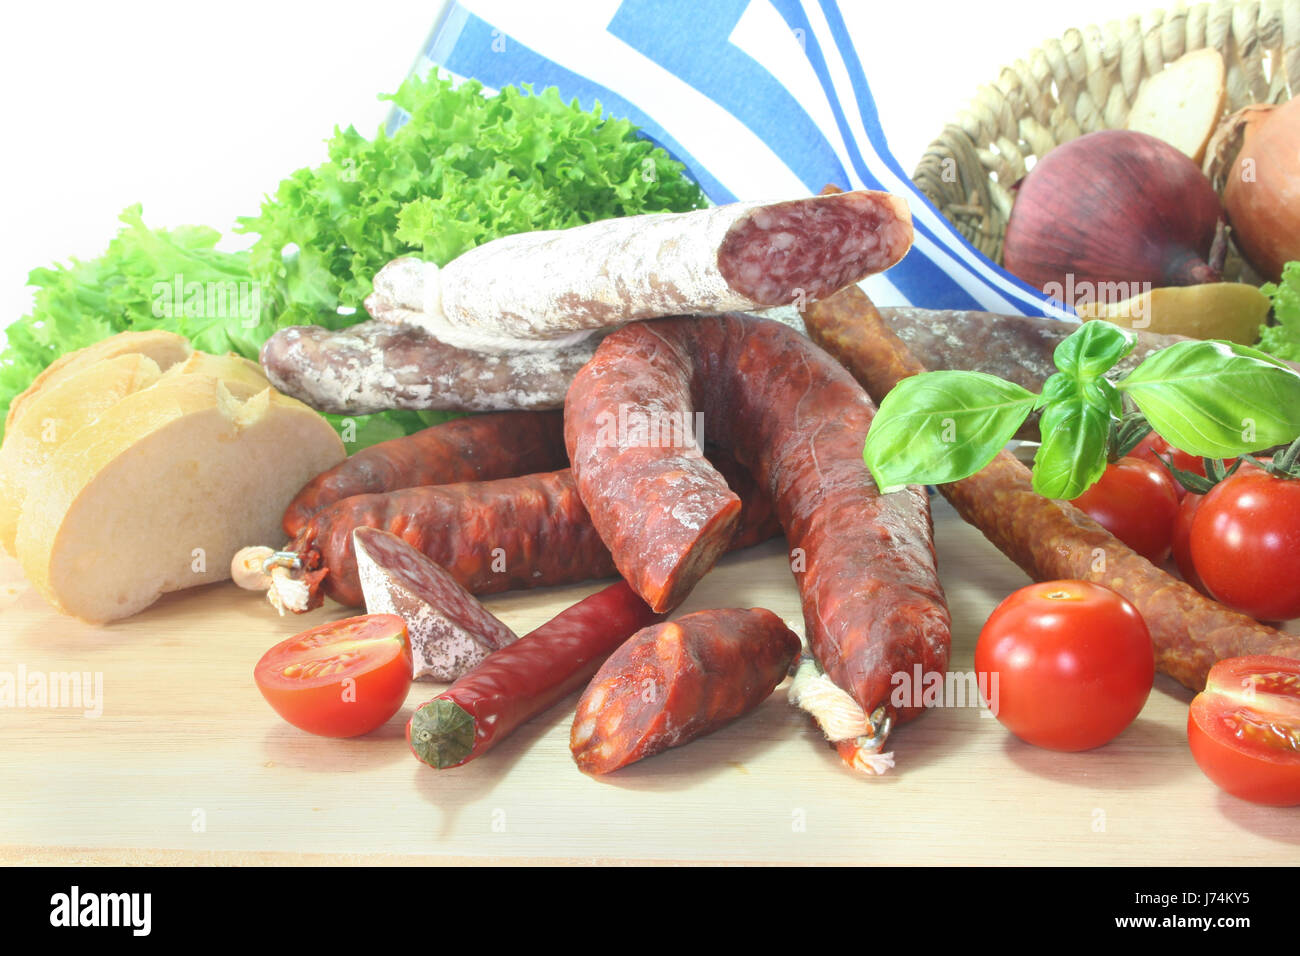 Griechenland-griechische Paprika Paprika-Tomaten-Tomaten getrocknete Salami  Luft gewürzt Wurst Stockfotografie - Alamy